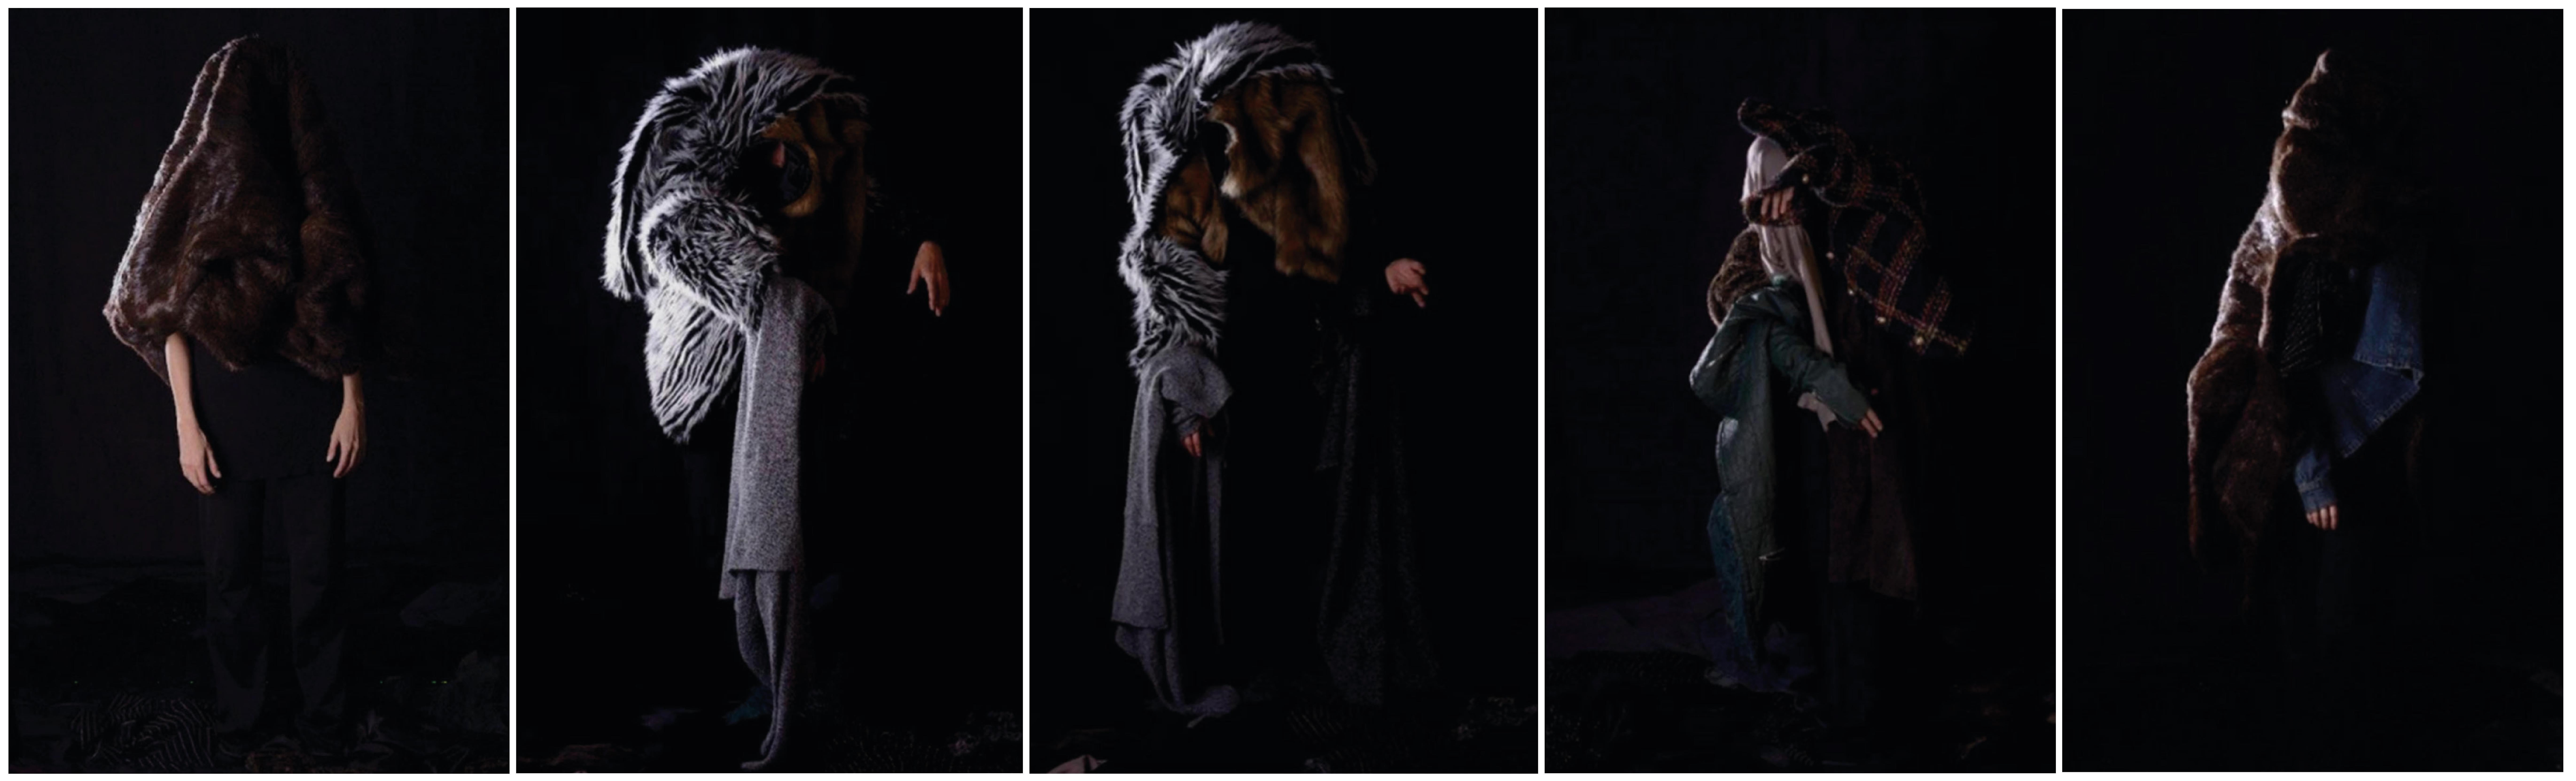 Maria José Arjona Figurative Photograph – von den Frequenzen, die ich herstelle. Performance-Fotografie, Farbporträt